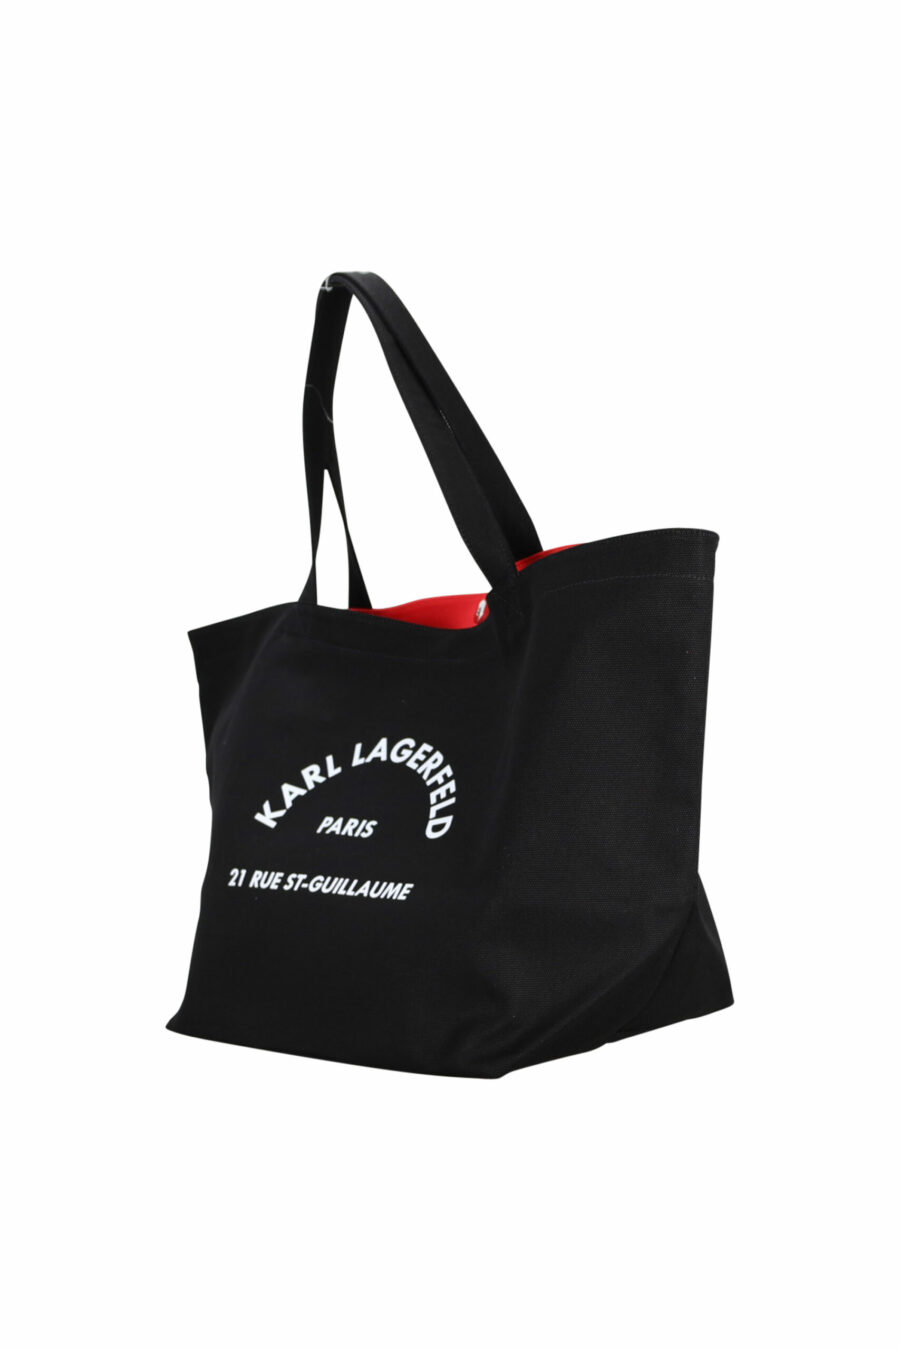 Tote bag negra con maxilogo "rue st guillaume" - 8720092106603 1 scaled